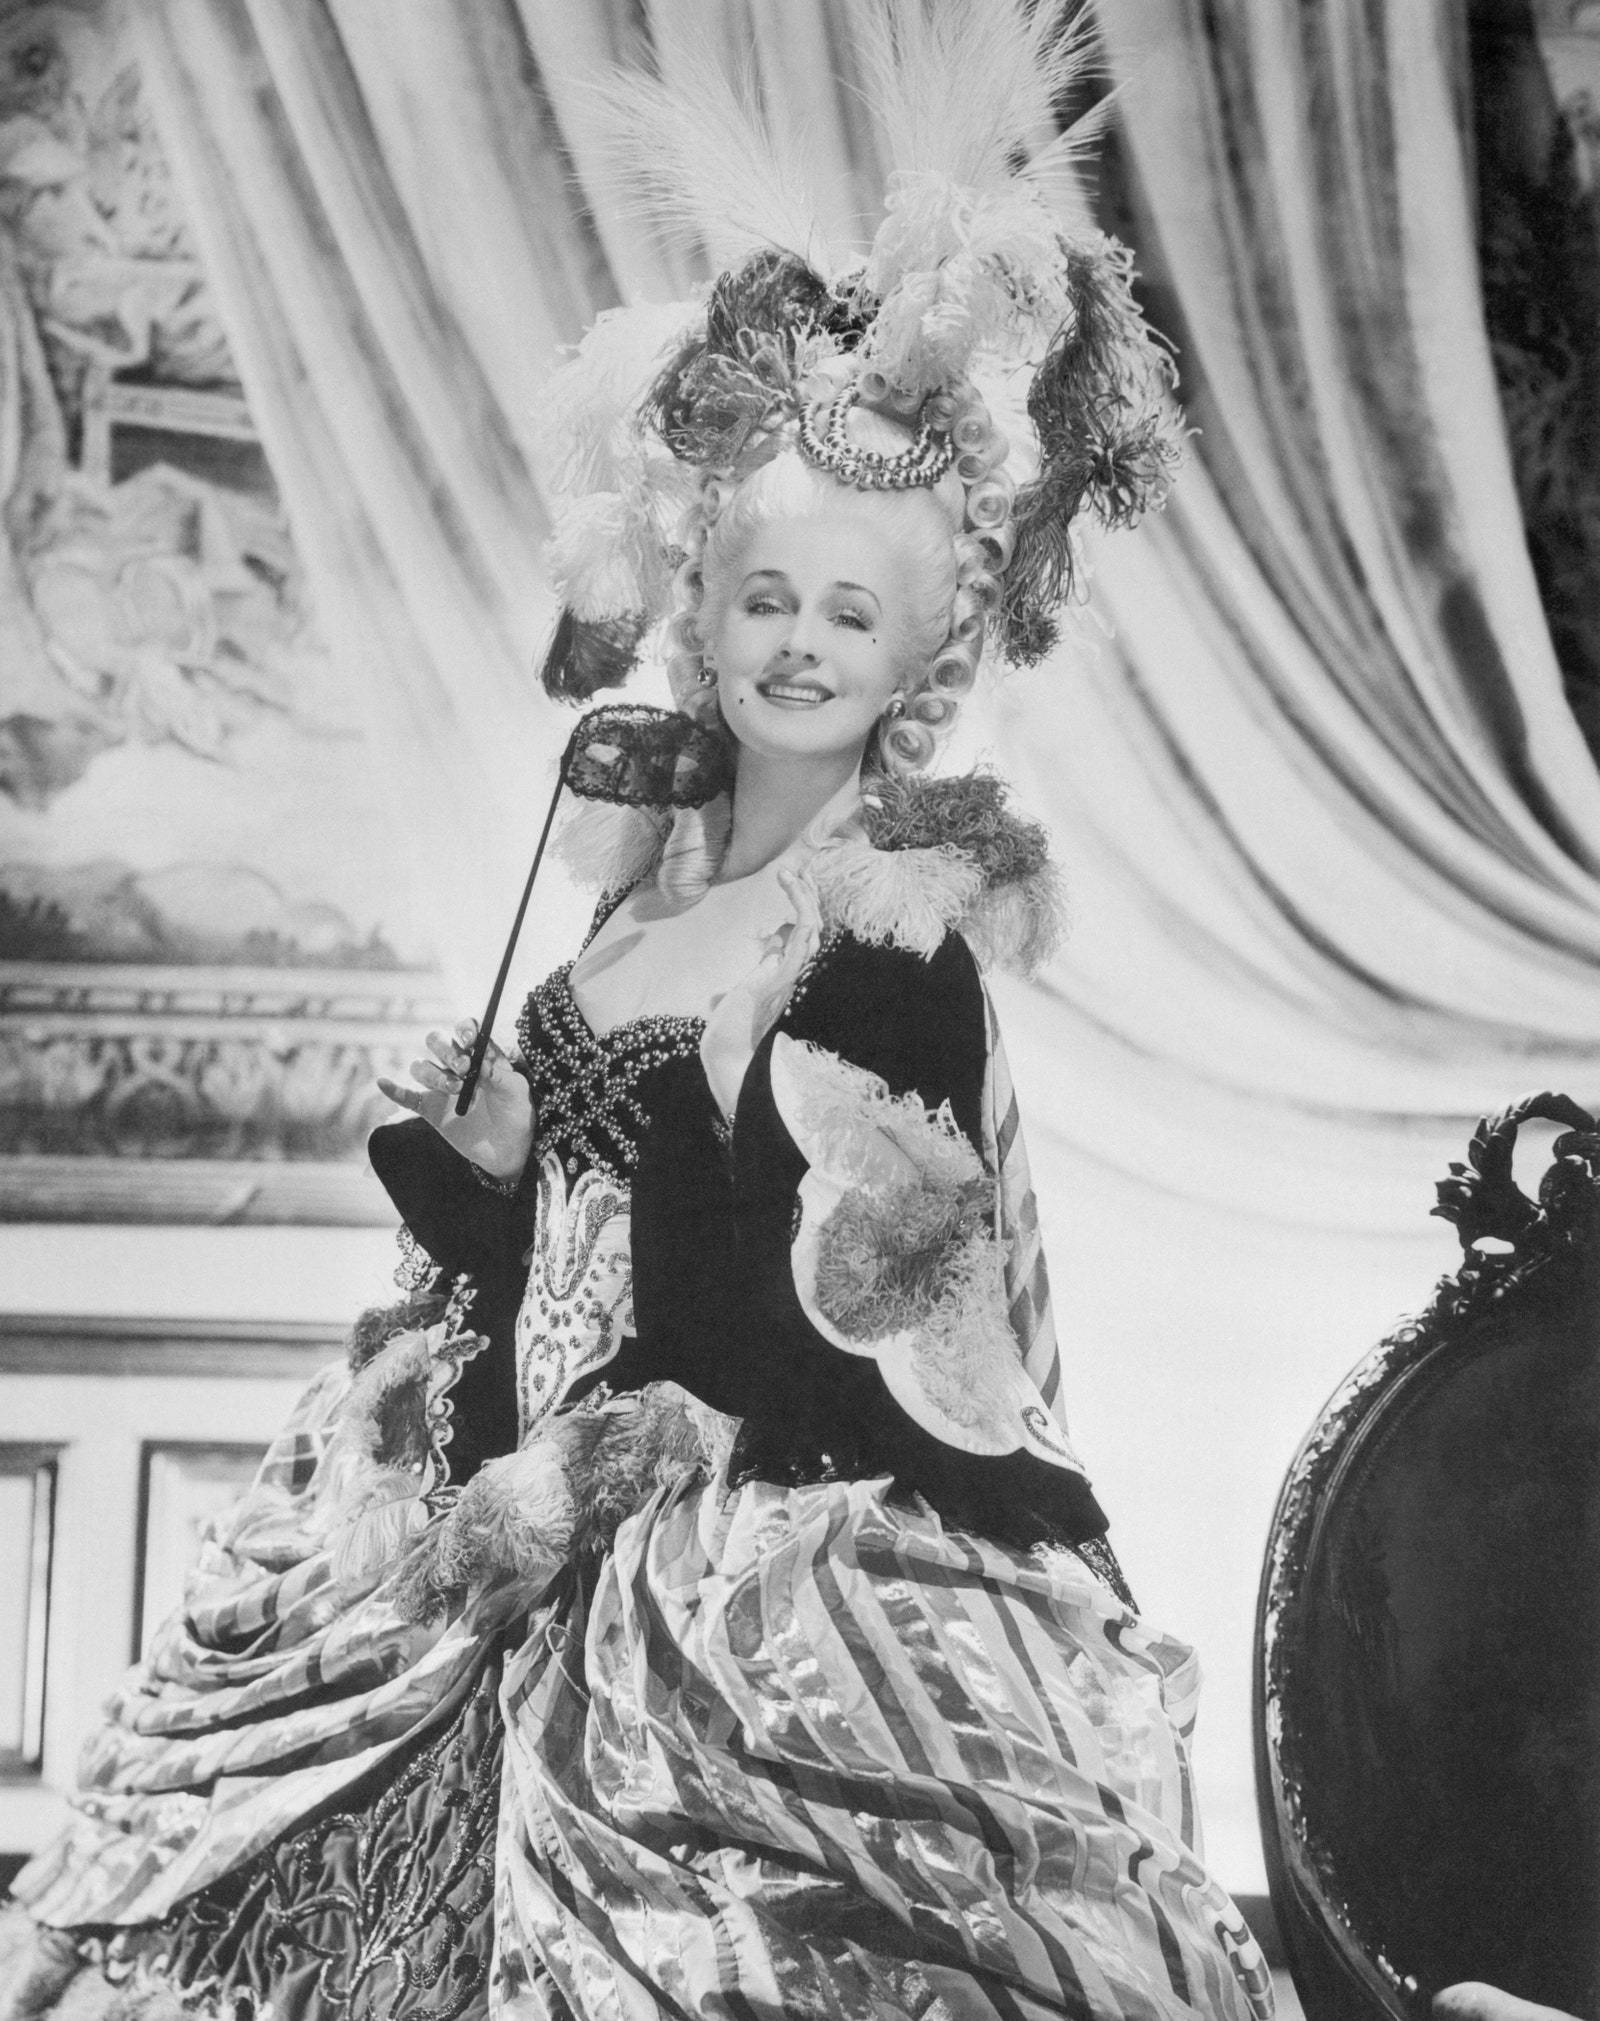 Norma Shearer wznawia swoją aktorską karierę, występując w roli ciężko doświadczonej przez los Marii Antoniny, w filmie o tej nazwie produkcji Metro-Goldwyn-Mayer. Shearer ma na sobie jeden z 34 wspaniałych kostiumów z wystawnej francuskiej epoki. (Fot. Bettmann/Getty Images)